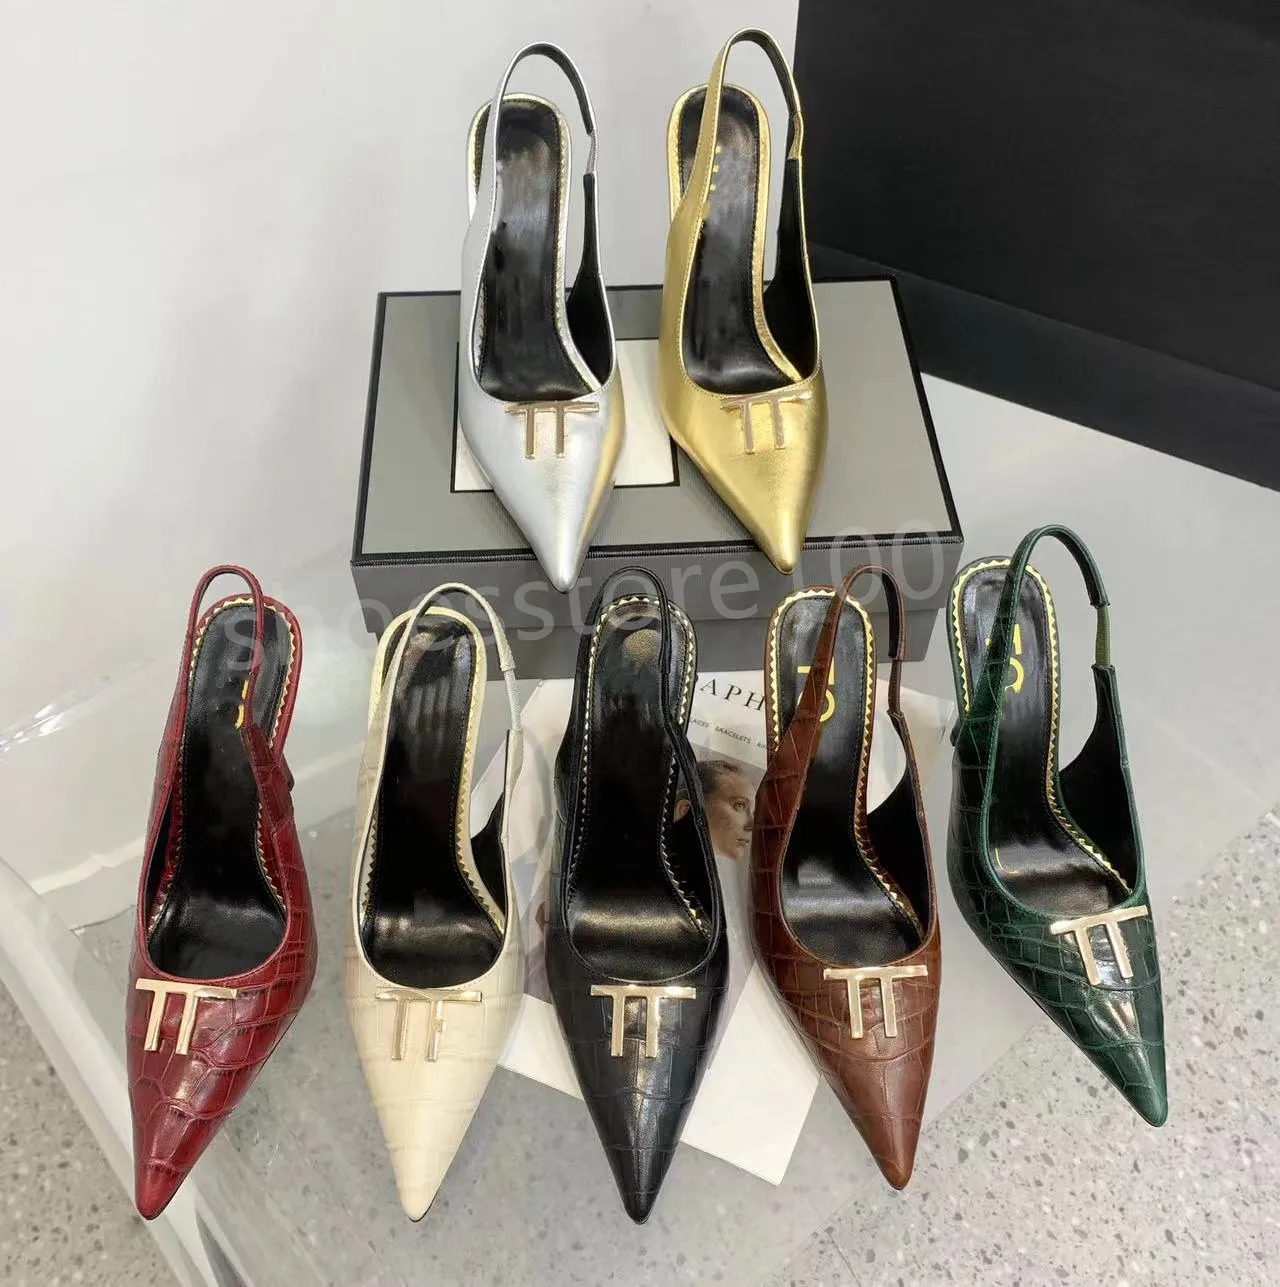 Последняя мода Сандалии на высоком каблуке с эффектом металлик Женские роскошные туфли на высоком каблуке с золотым замком Летние розово-красные сандалии с ремешком на щиколотке Модельная обувная фабричная обувь